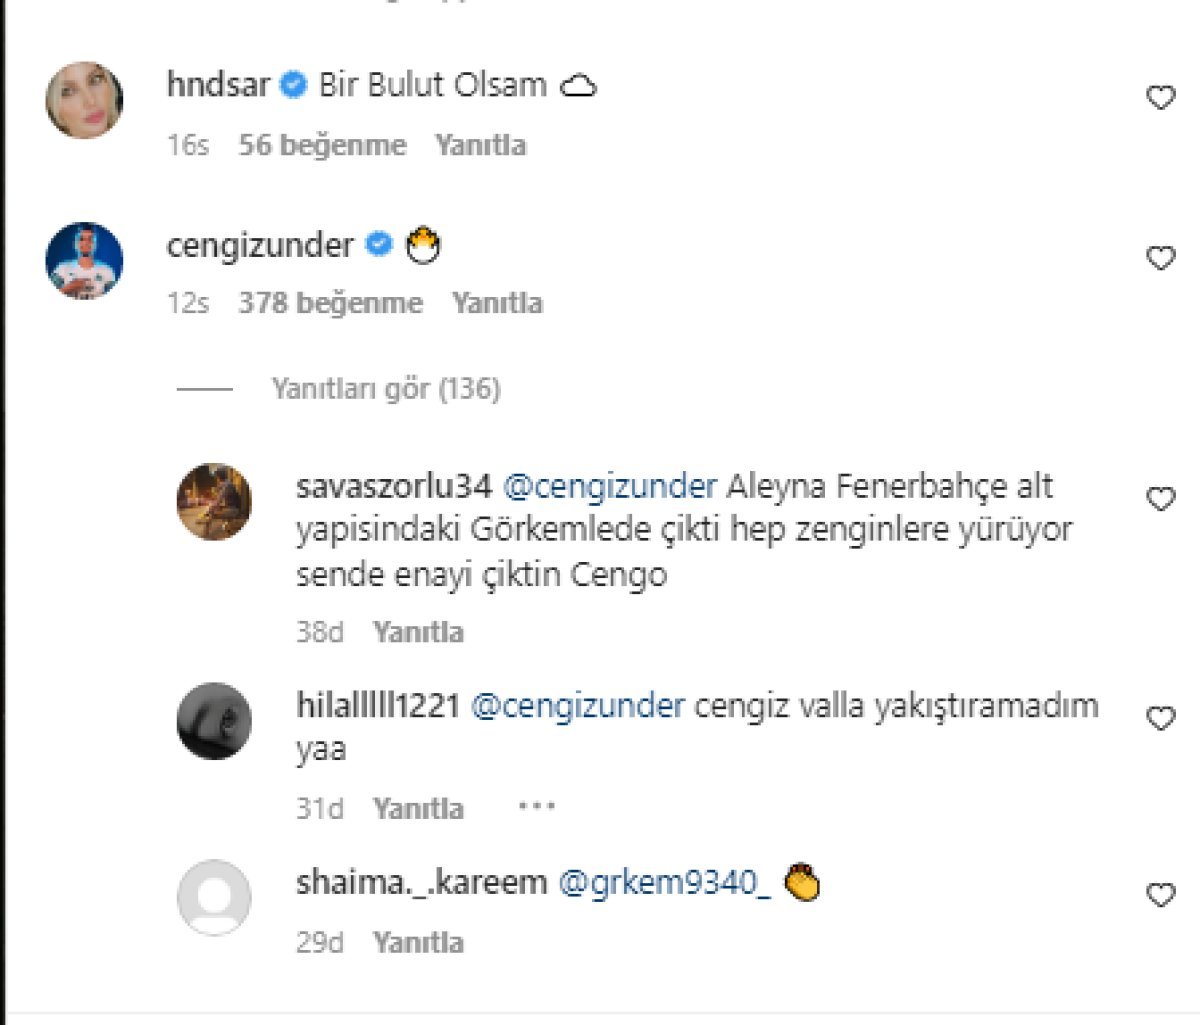 Cengiz Ünder, Aleyna Kalaycıoğlu na yorum yazdı #3